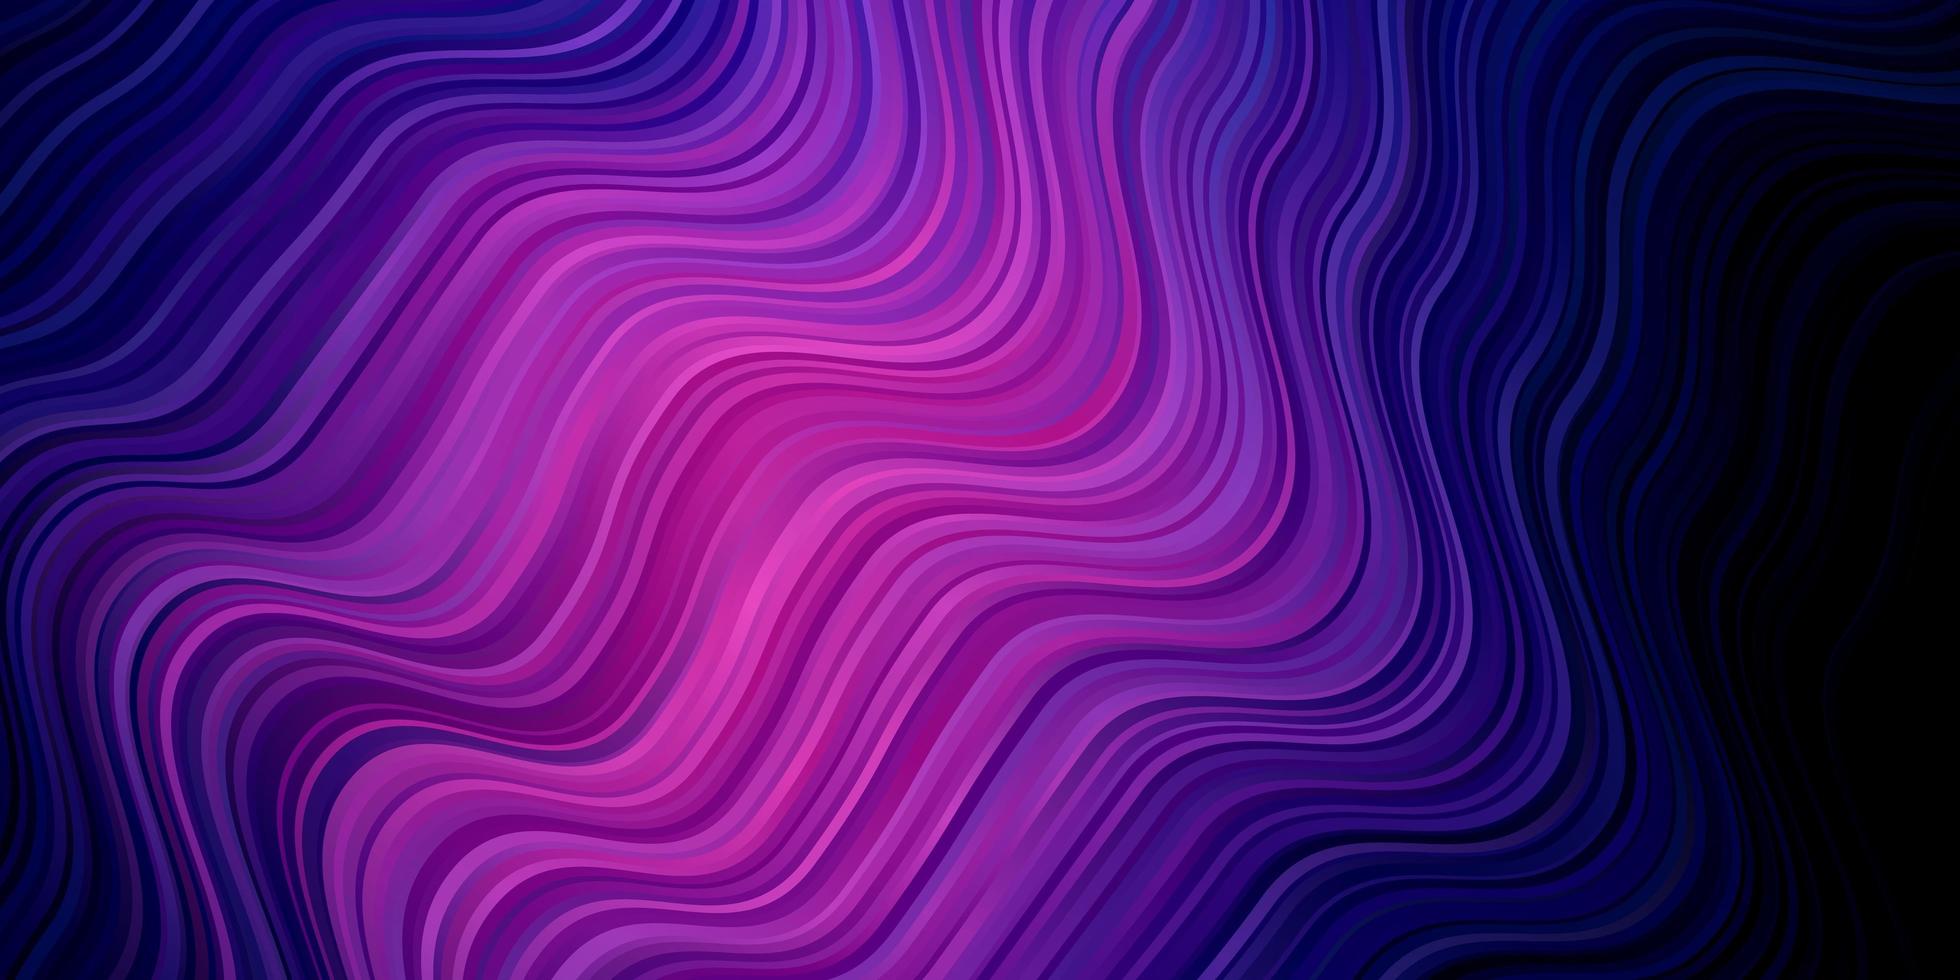 sfondo vettoriale rosa scuro, blu con curve. illustrazione colorata con linee curve. modello per la progettazione dell'interfaccia utente.